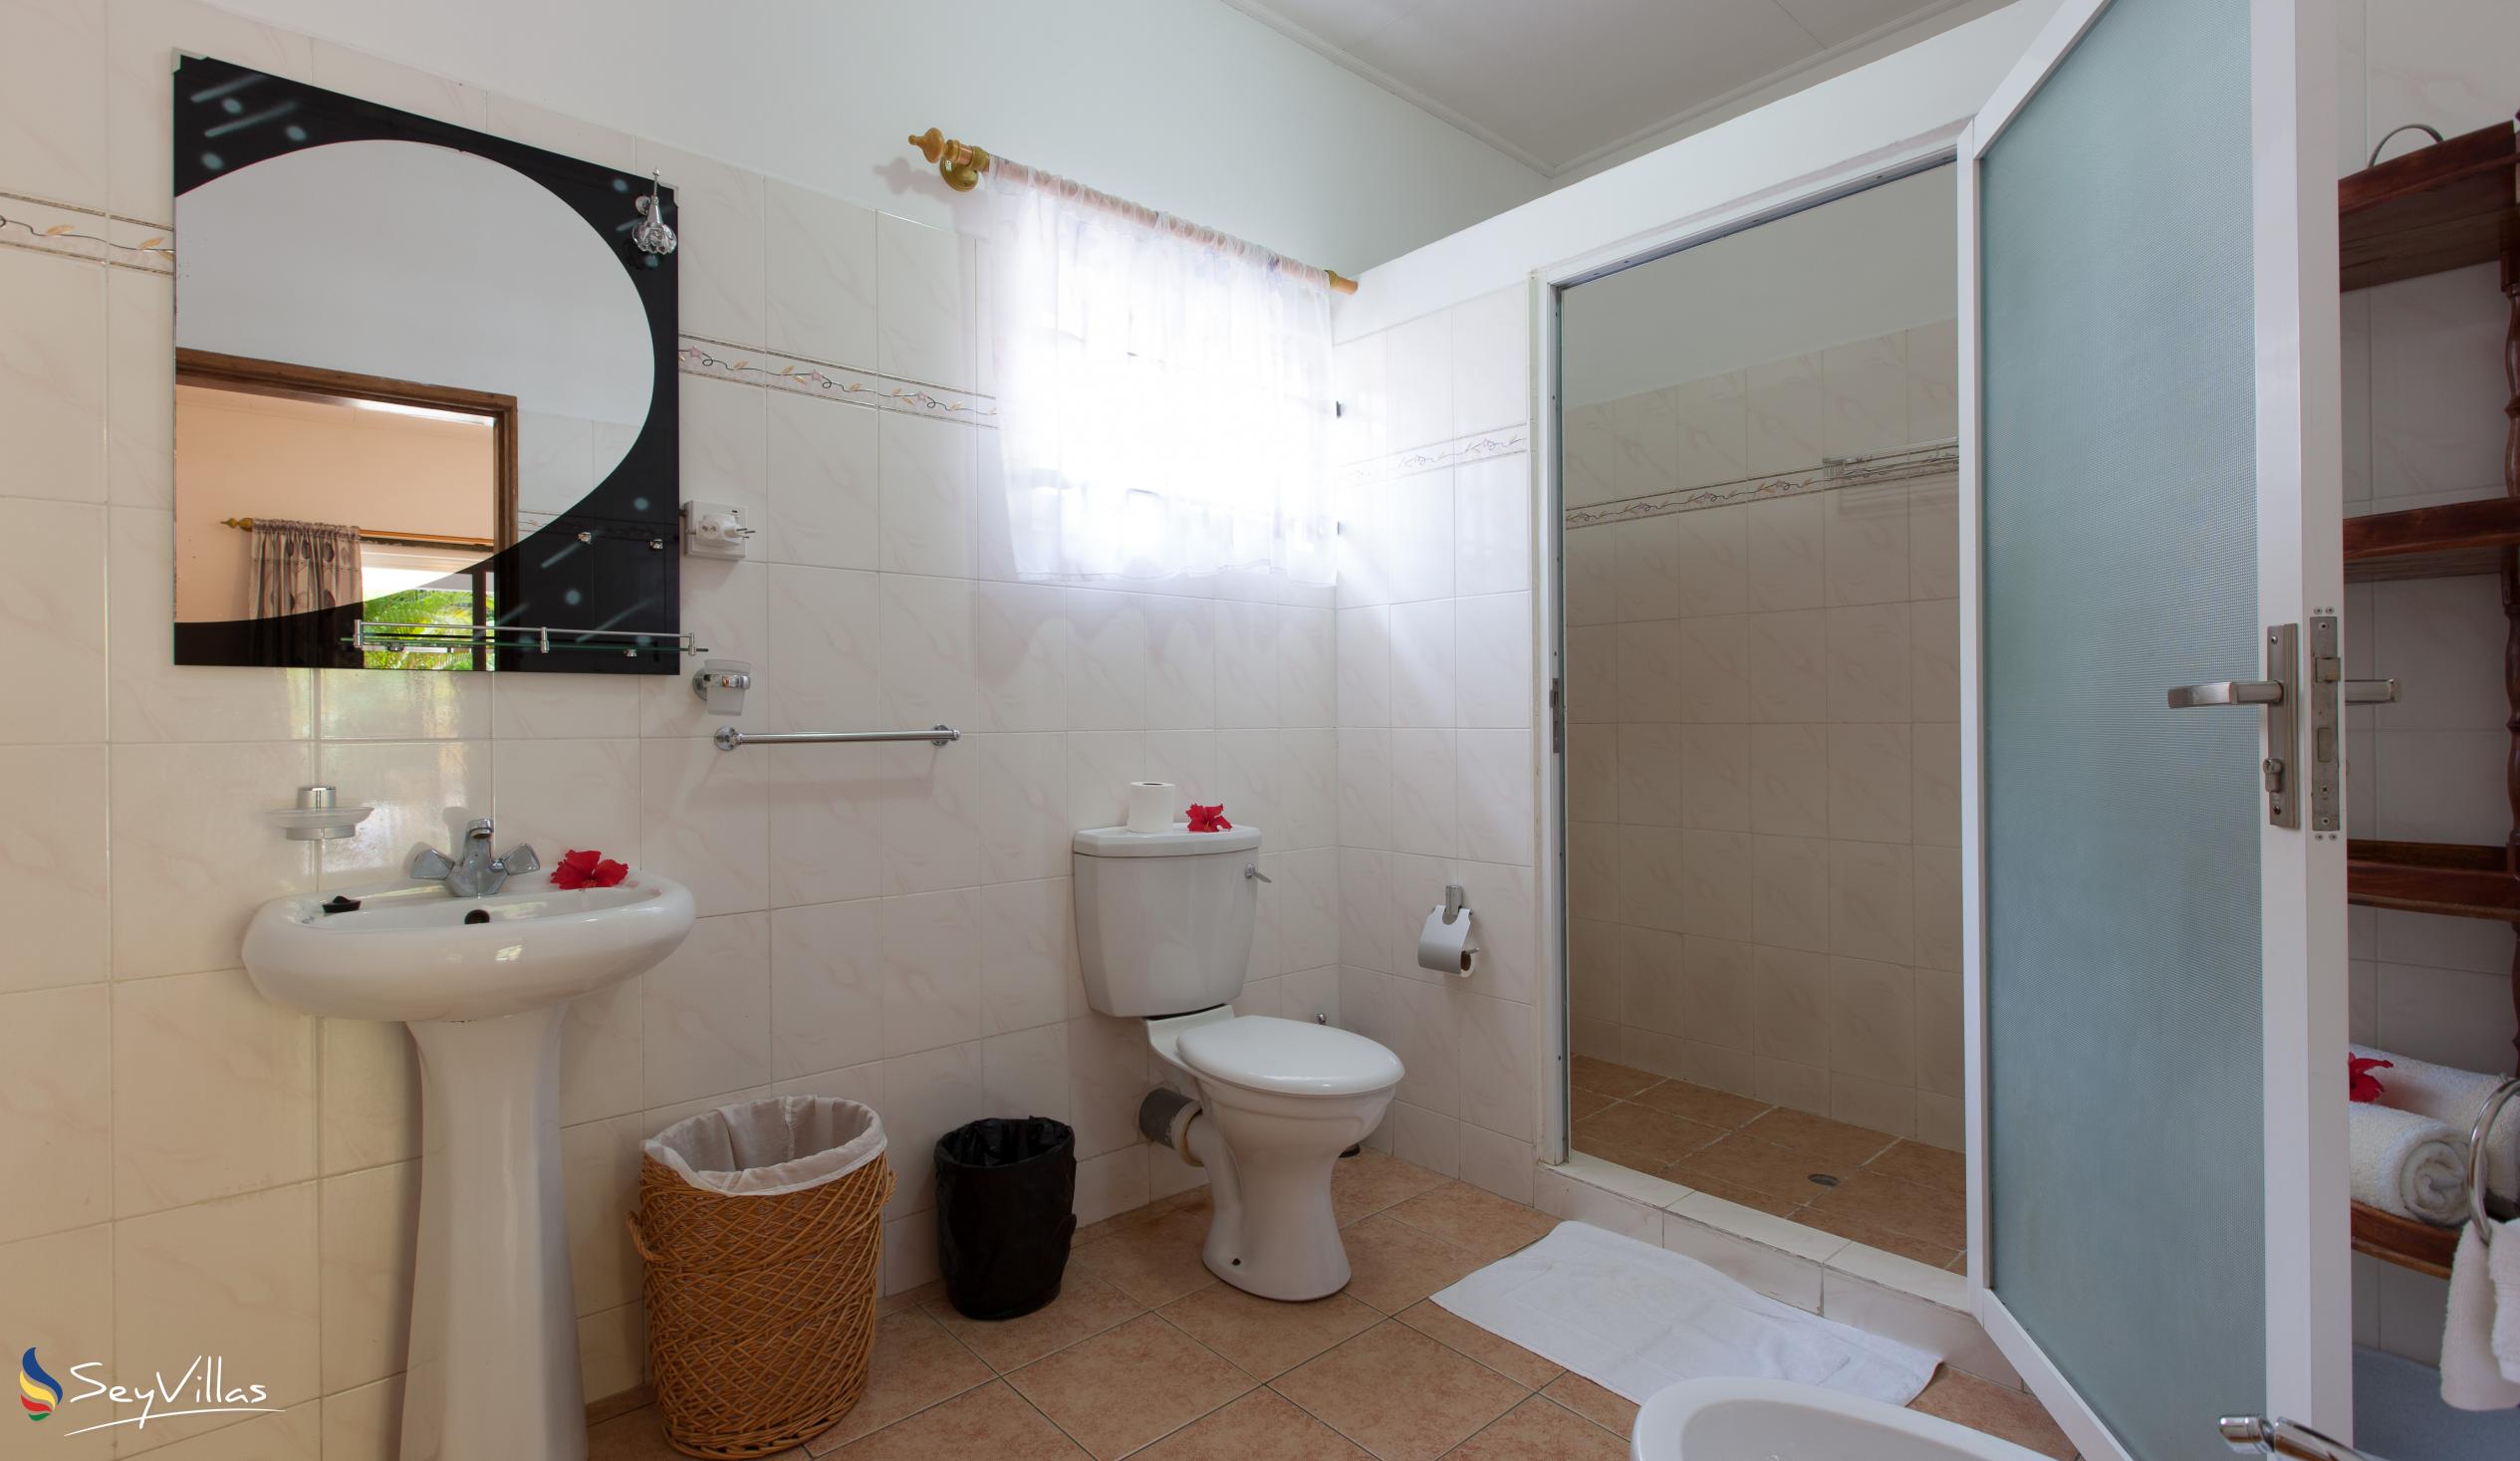 Foto 48: Acquario Villa - Appartement mit 1 Schlafzimmer - Praslin (Seychellen)